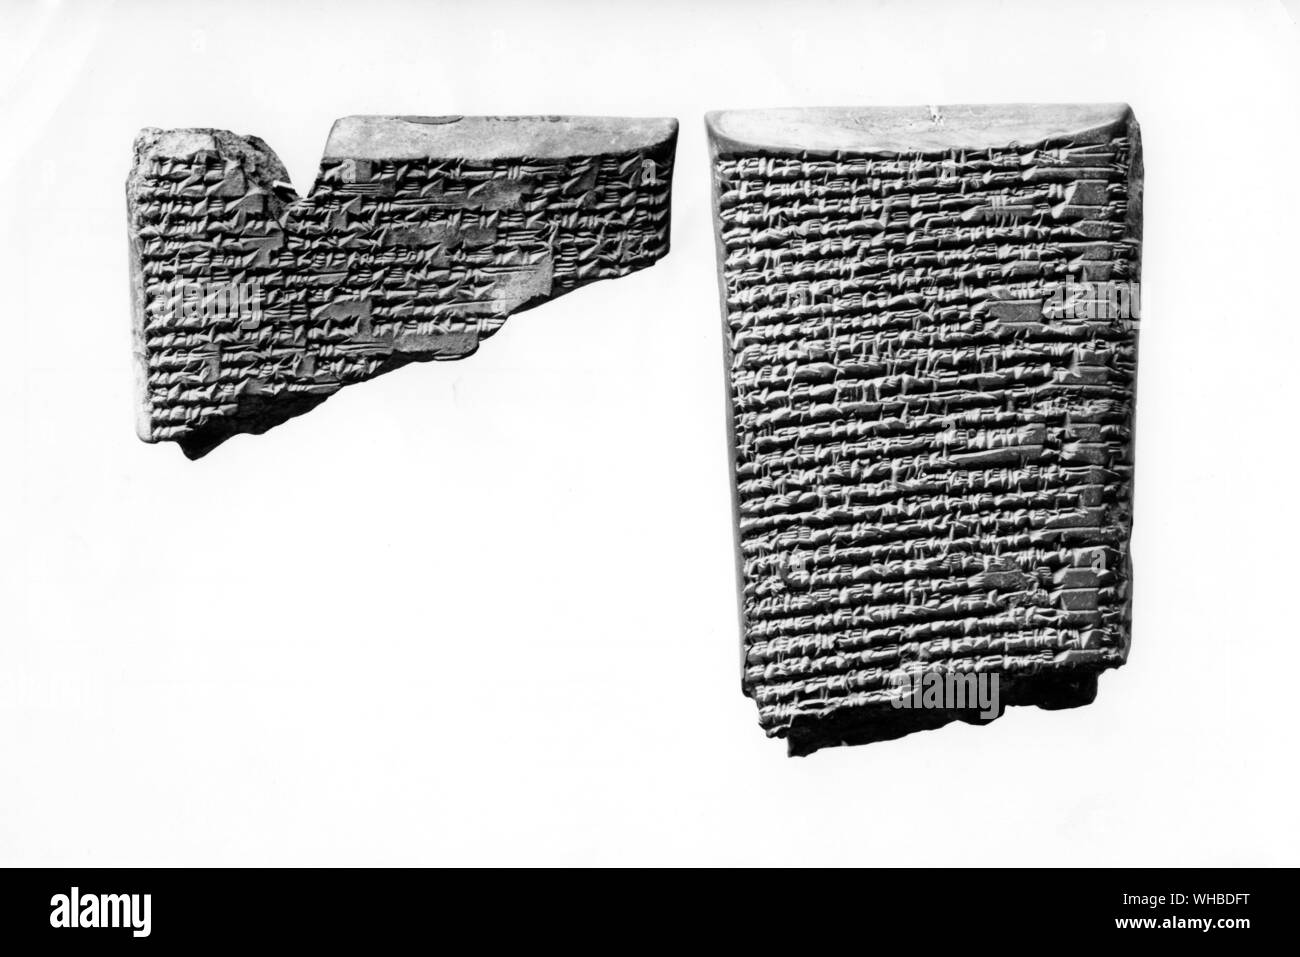 Fragmentos de arcilla cocida tablet teniendo las opiniones y las creencias de los babilonios y los asirios sobre la creación Foto de stock